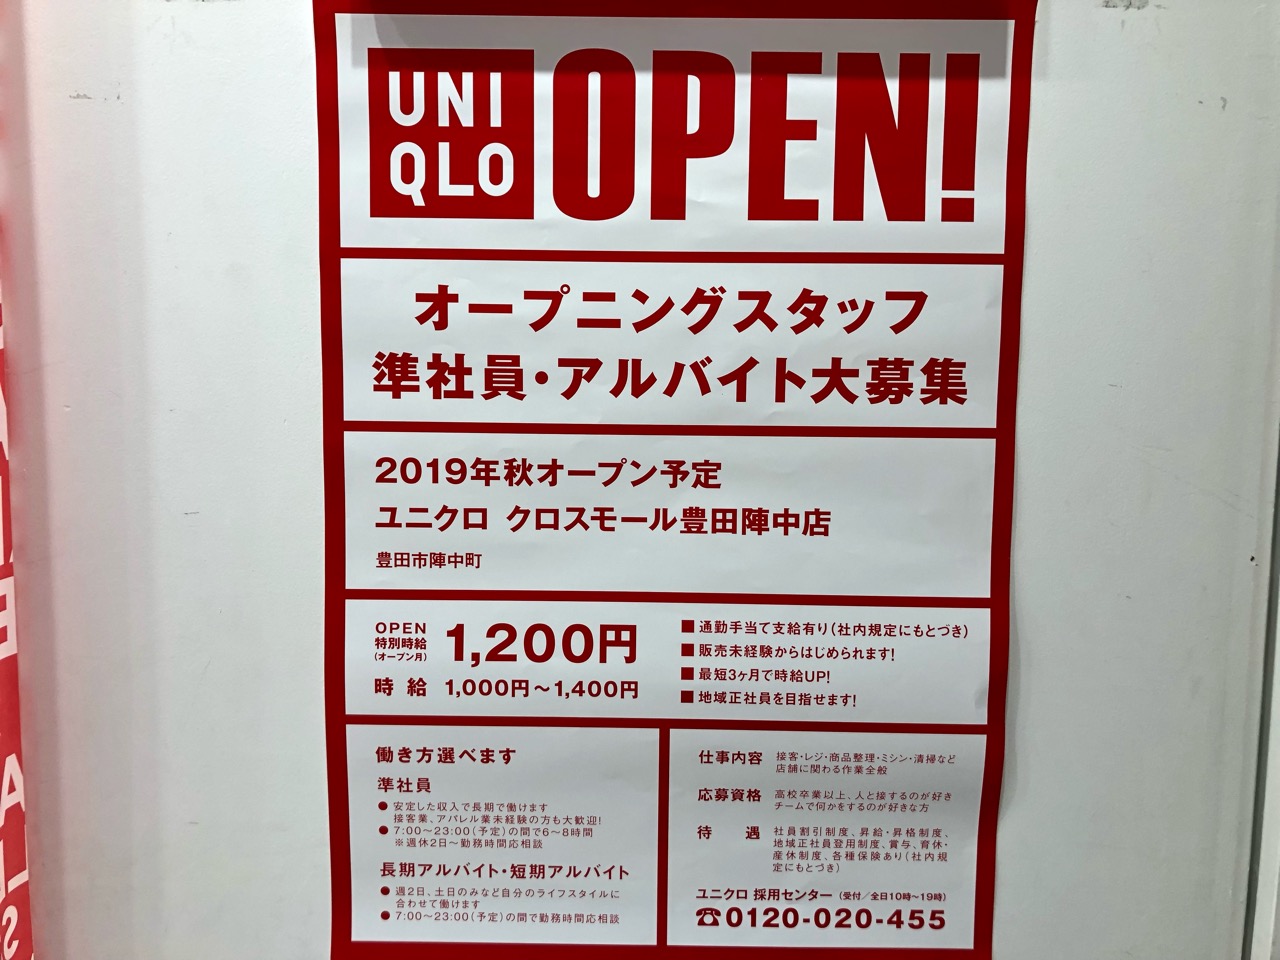 2019年秋クロスモール豊田陣中にオープン予定のユニクロ